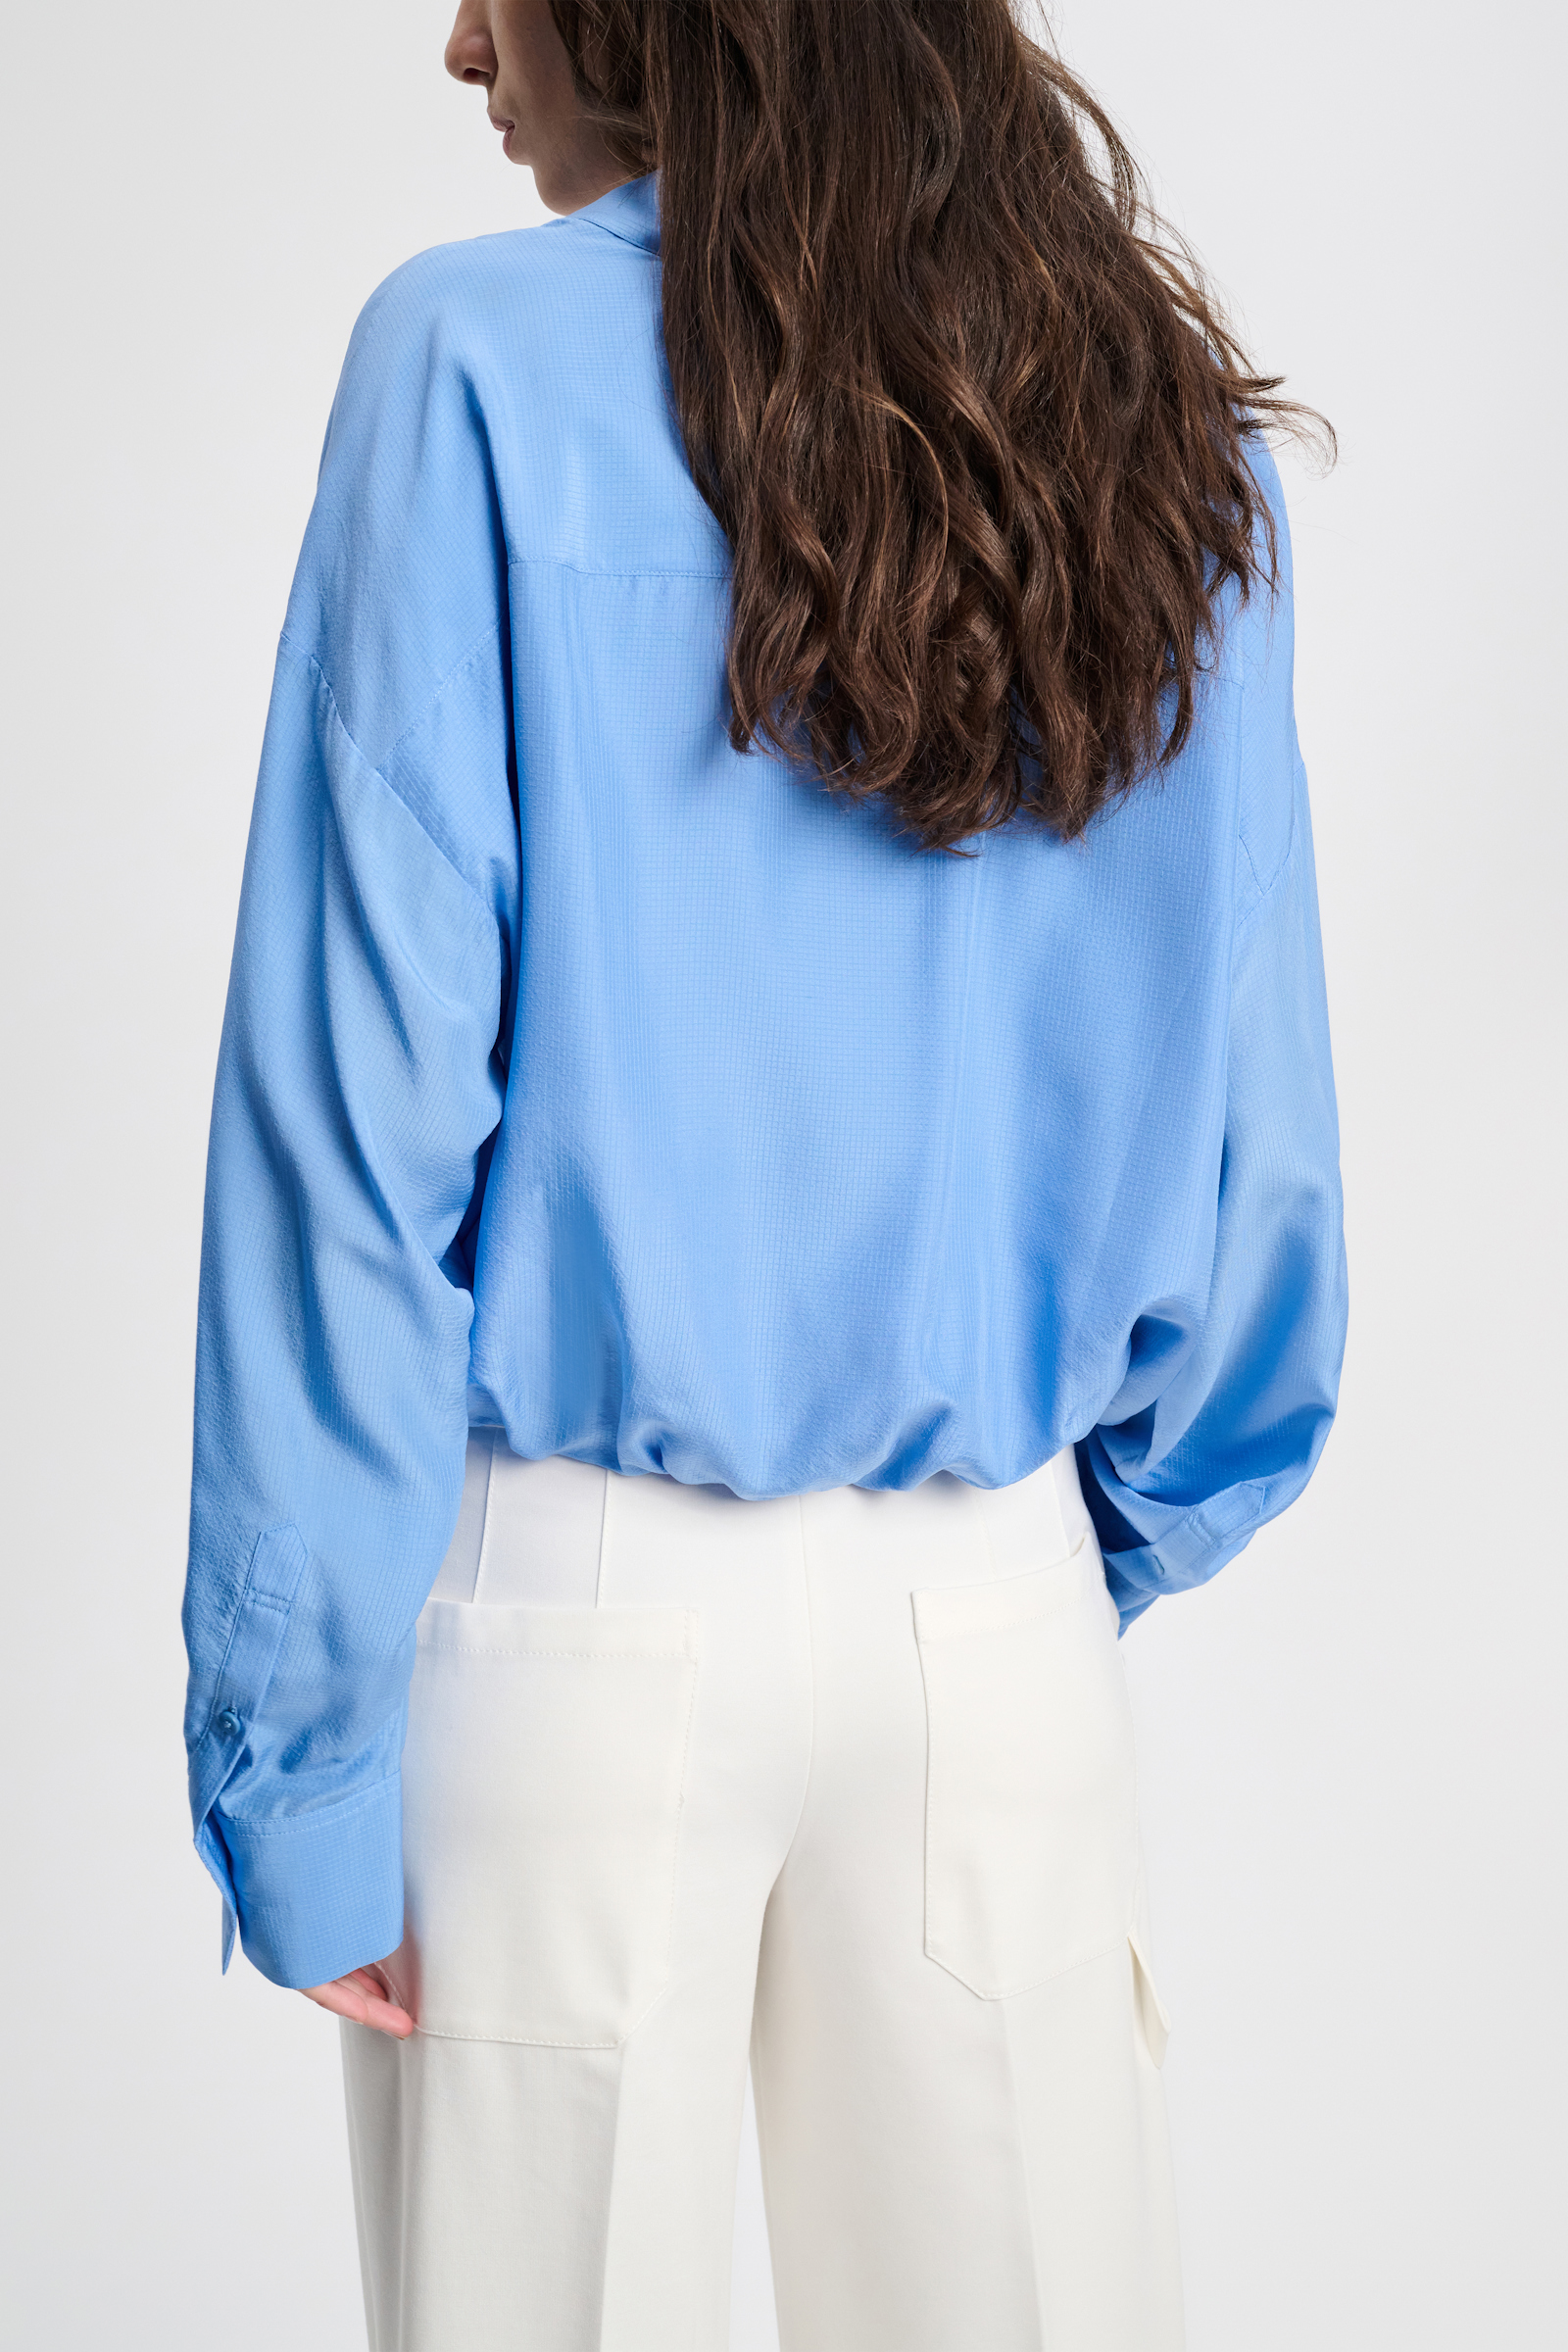 Dorothee Schumacher Silk blouse with balloon hem cornflower blue